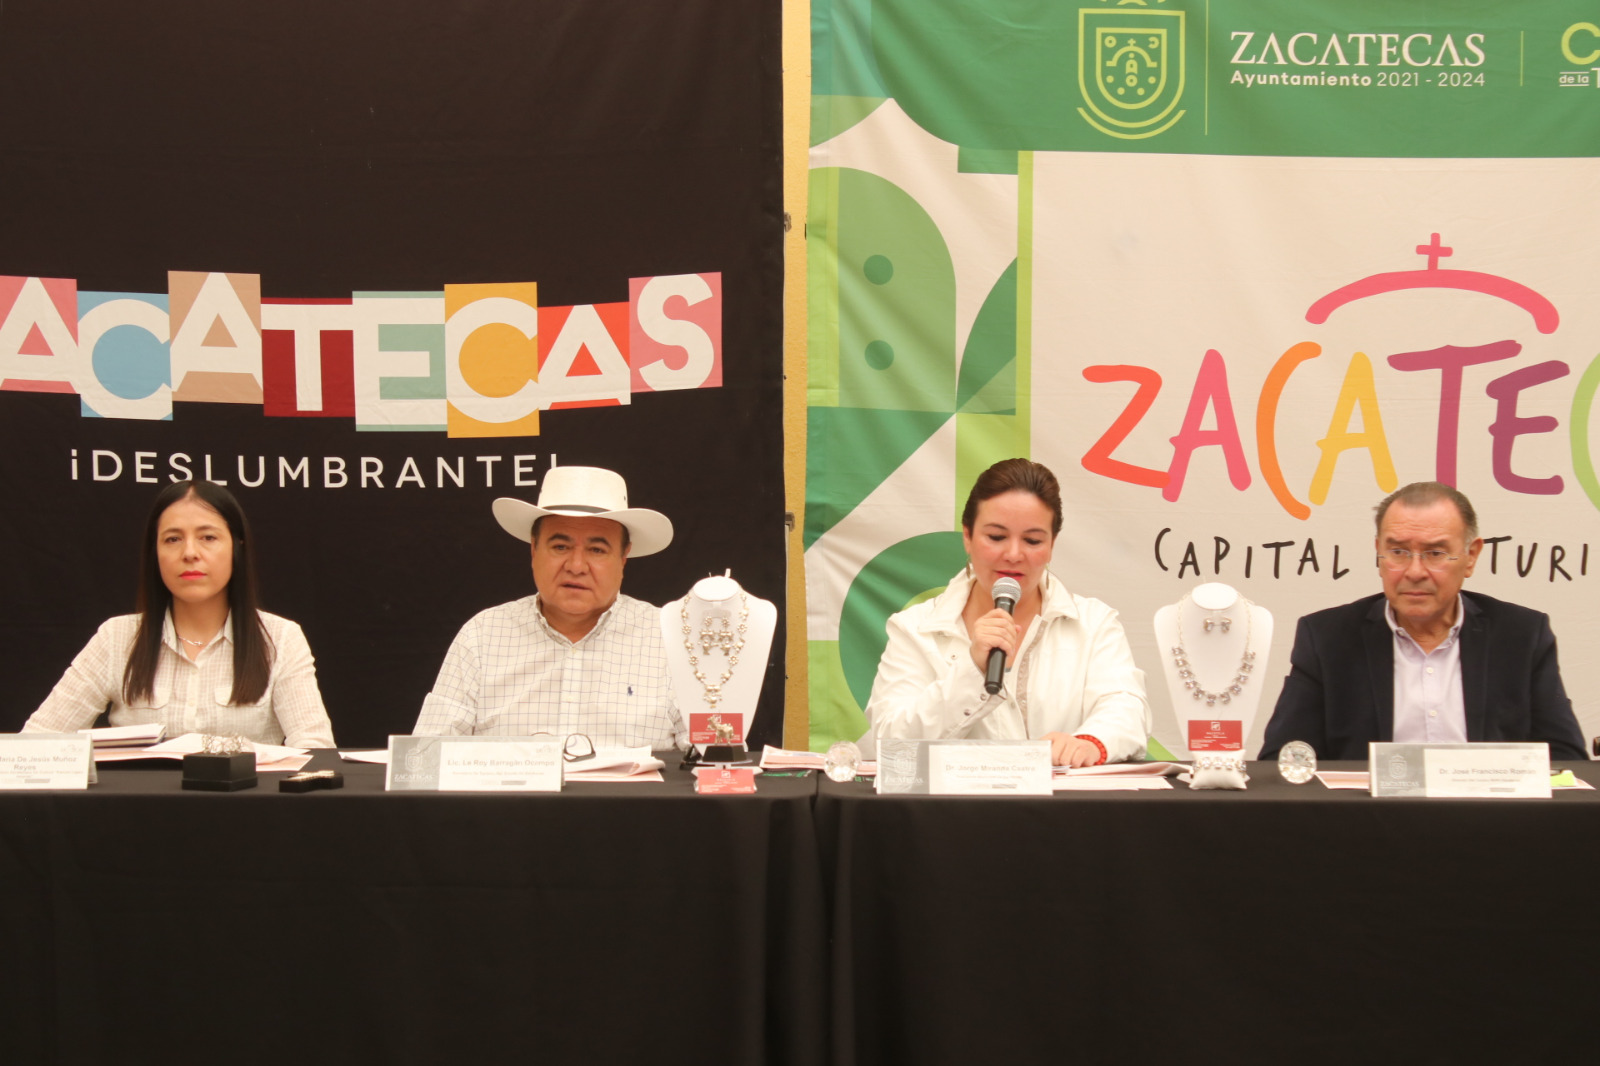 Recibirá Zacatecas a 300 personas dedicadas a la orfebrería, provenientes de Iberoamérica